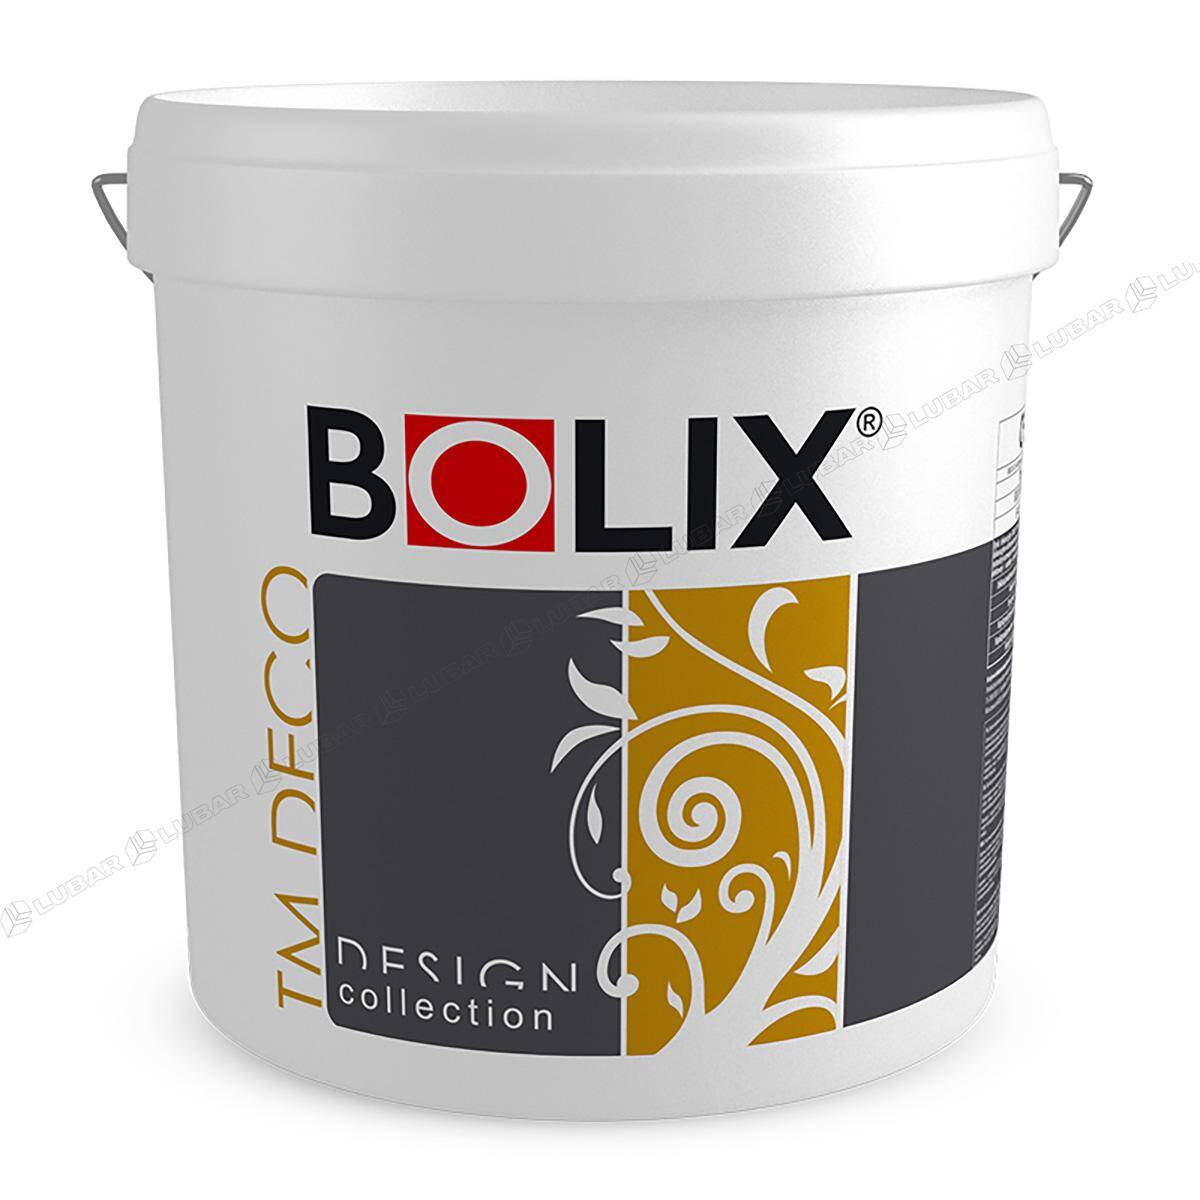 BOLIX TM DECO Tynk dekoracyjny z miką 25 kg NATURAL BEAUTY TMD21